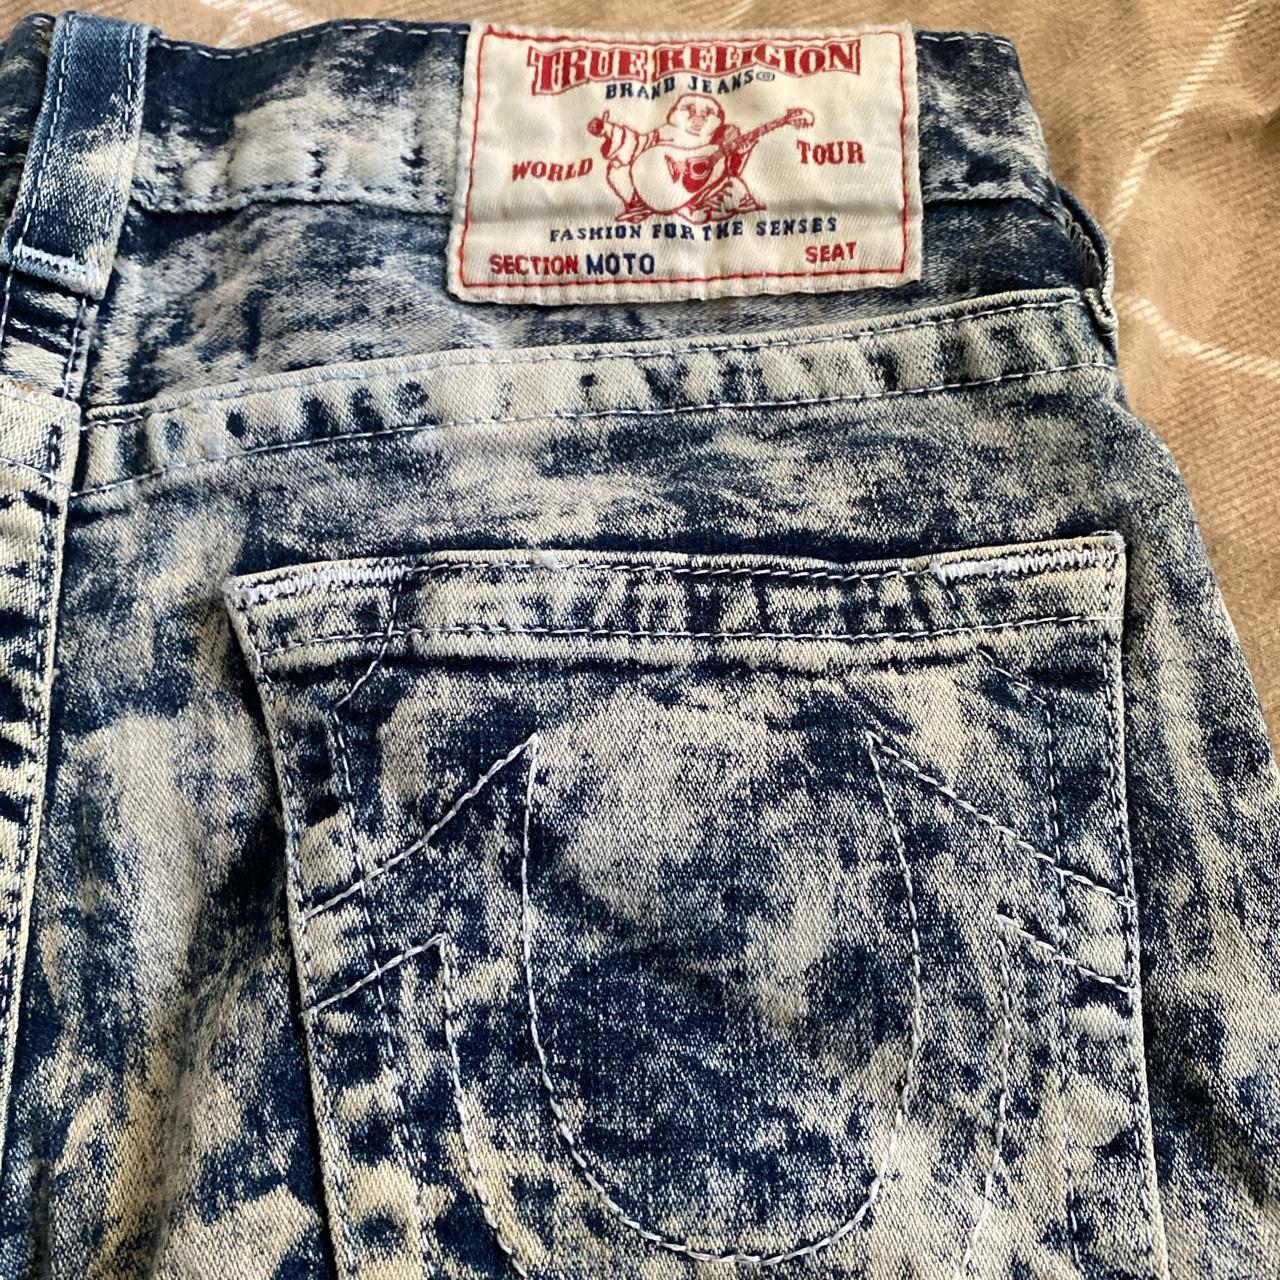 Skinny true religion jeans, I outgrew them a while... - Depop